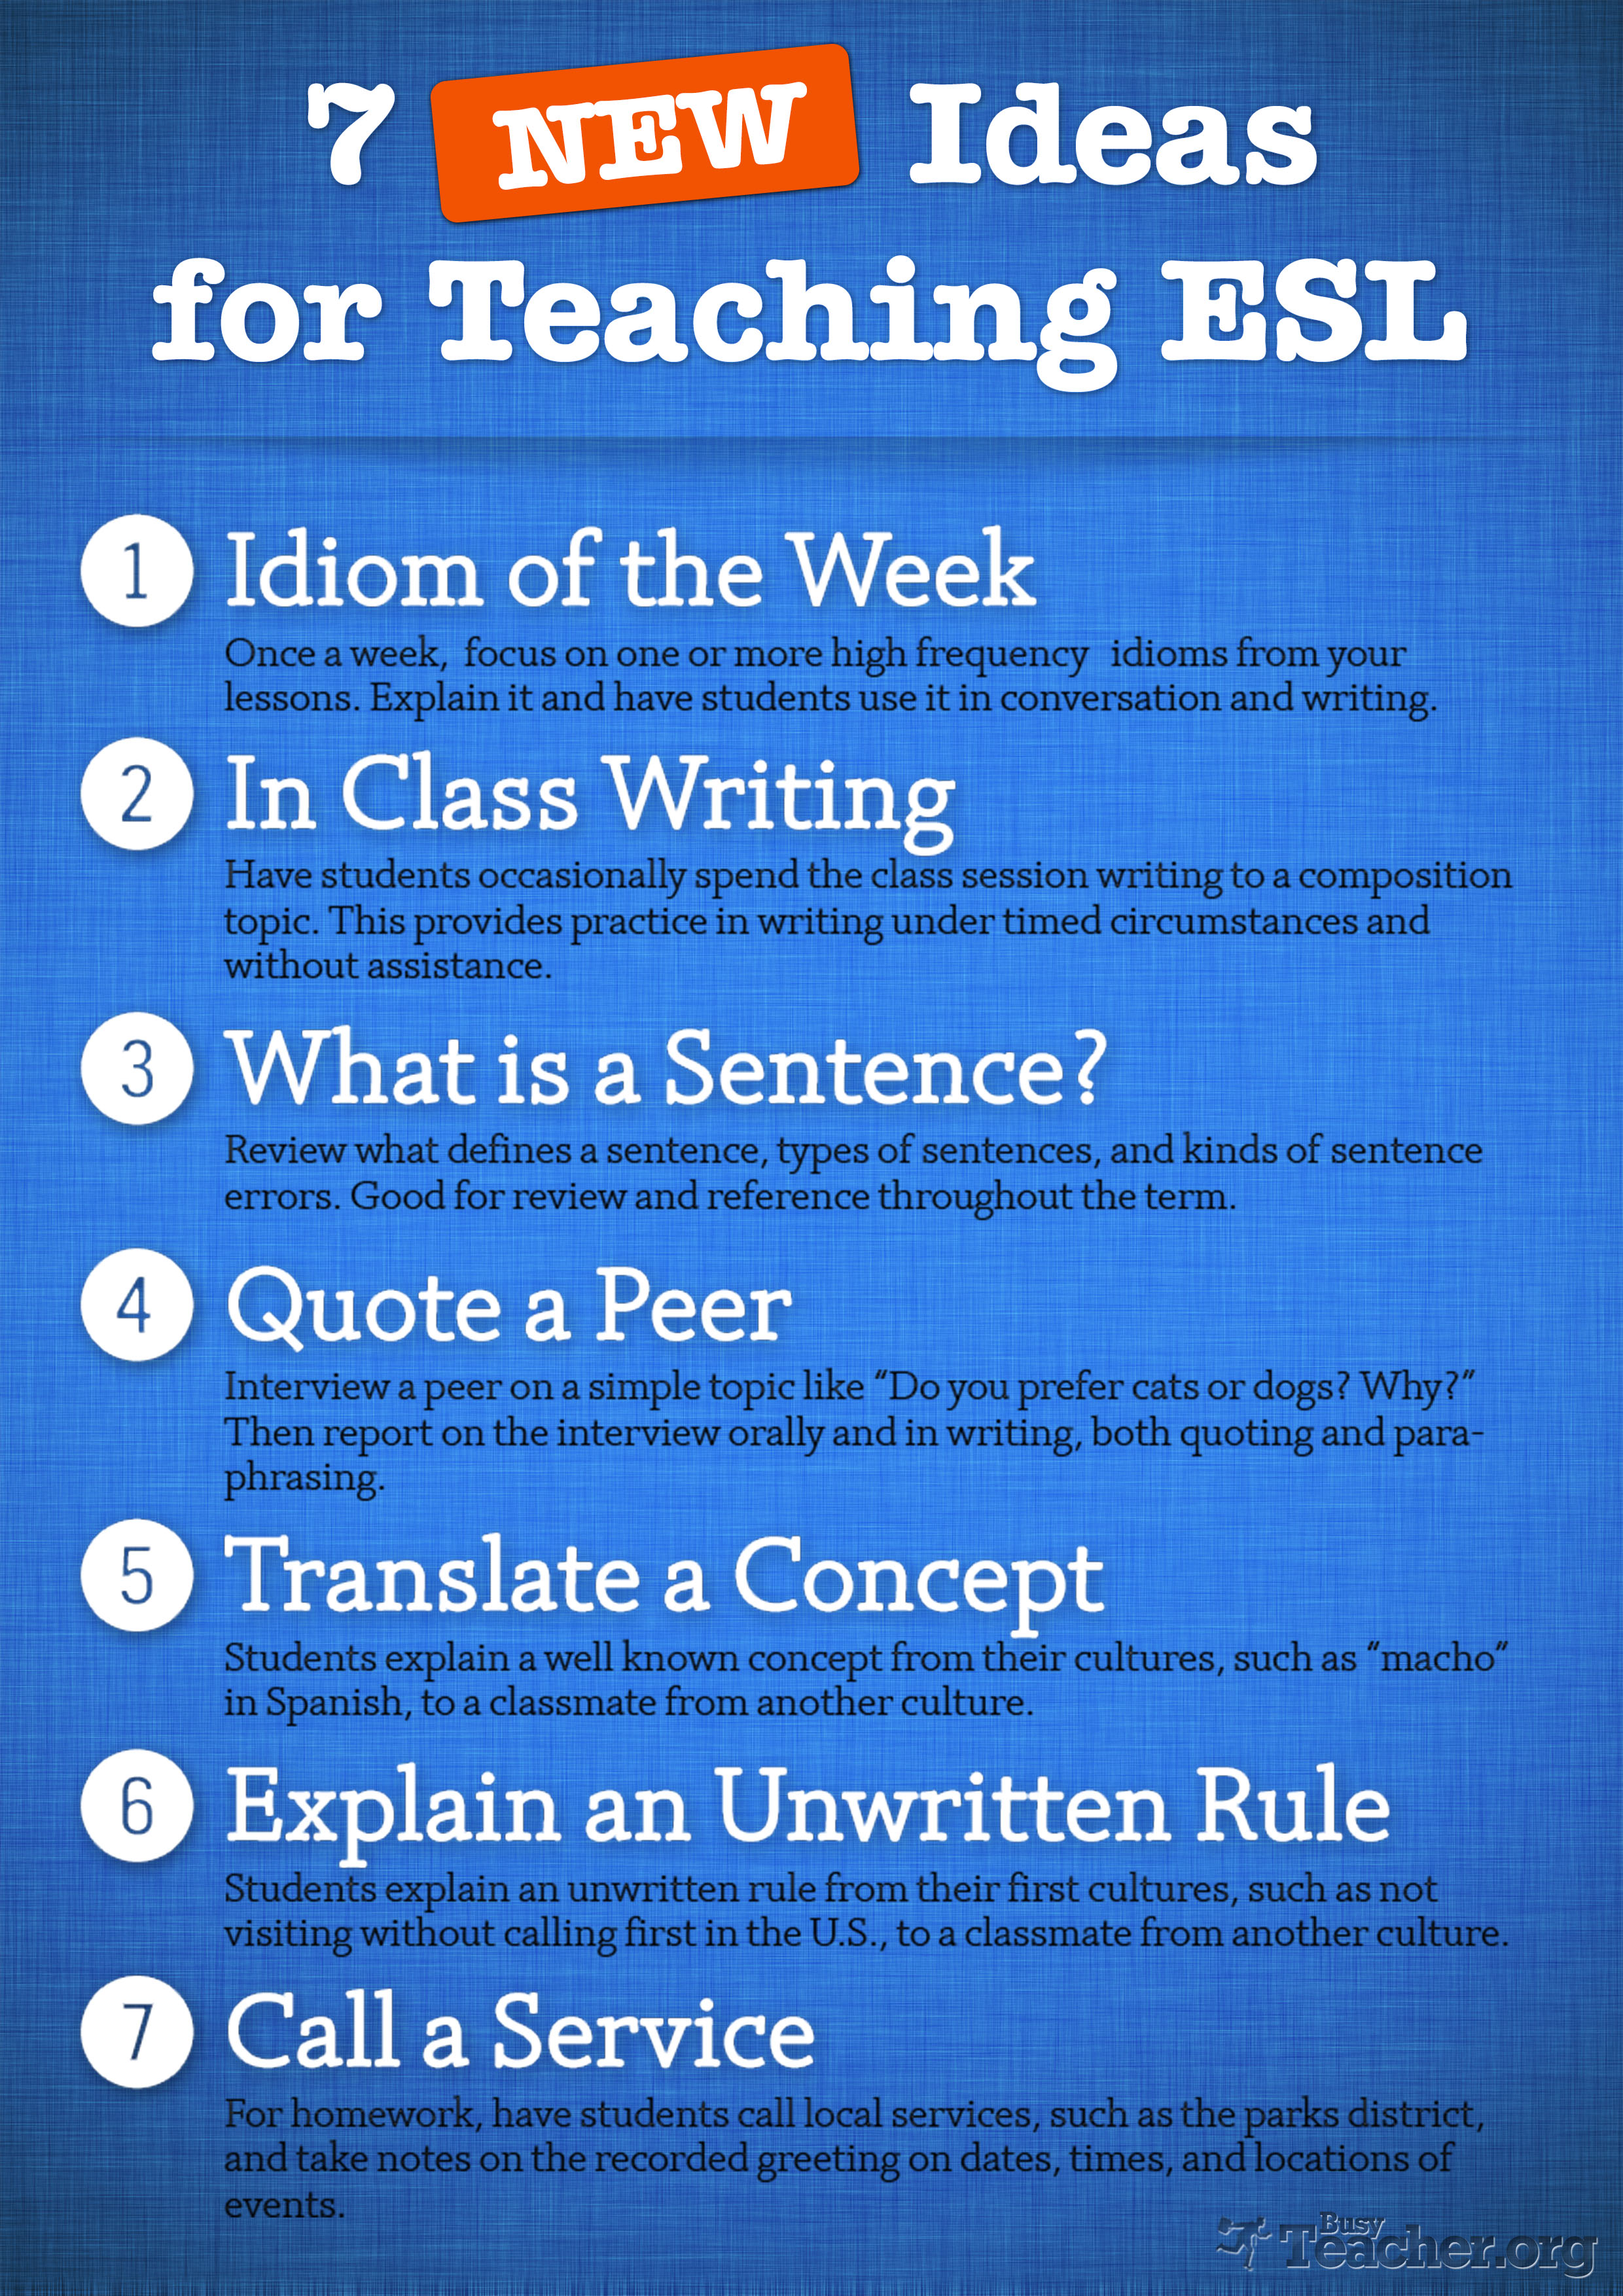 7 NEW Ideas For Teaching ESL: Poster